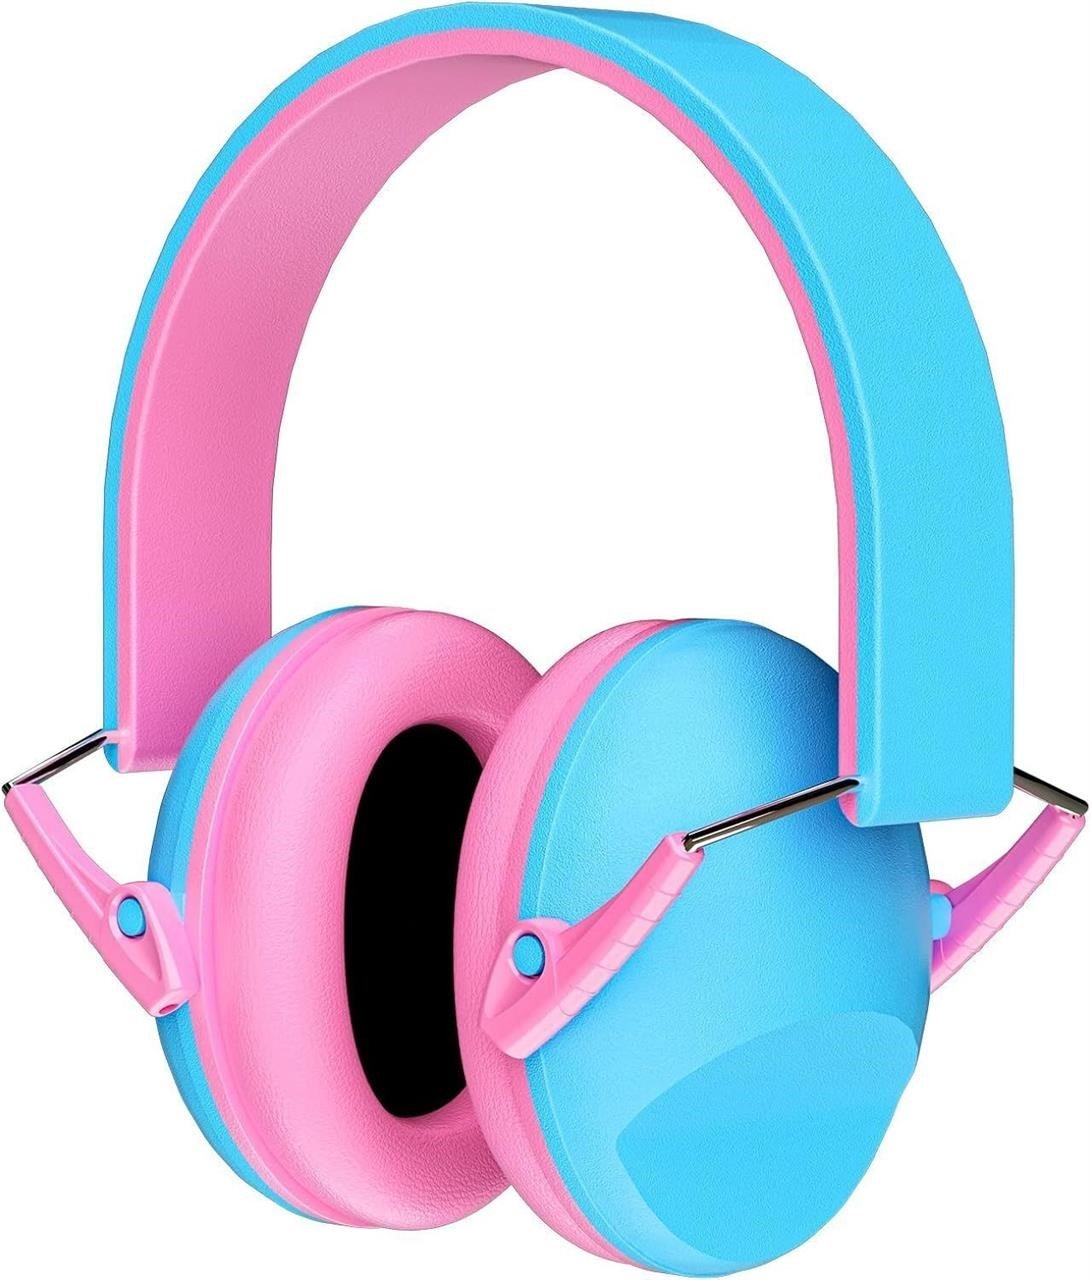 RIIKUNTEK Kids Ear Protection Safety Ear Muffs